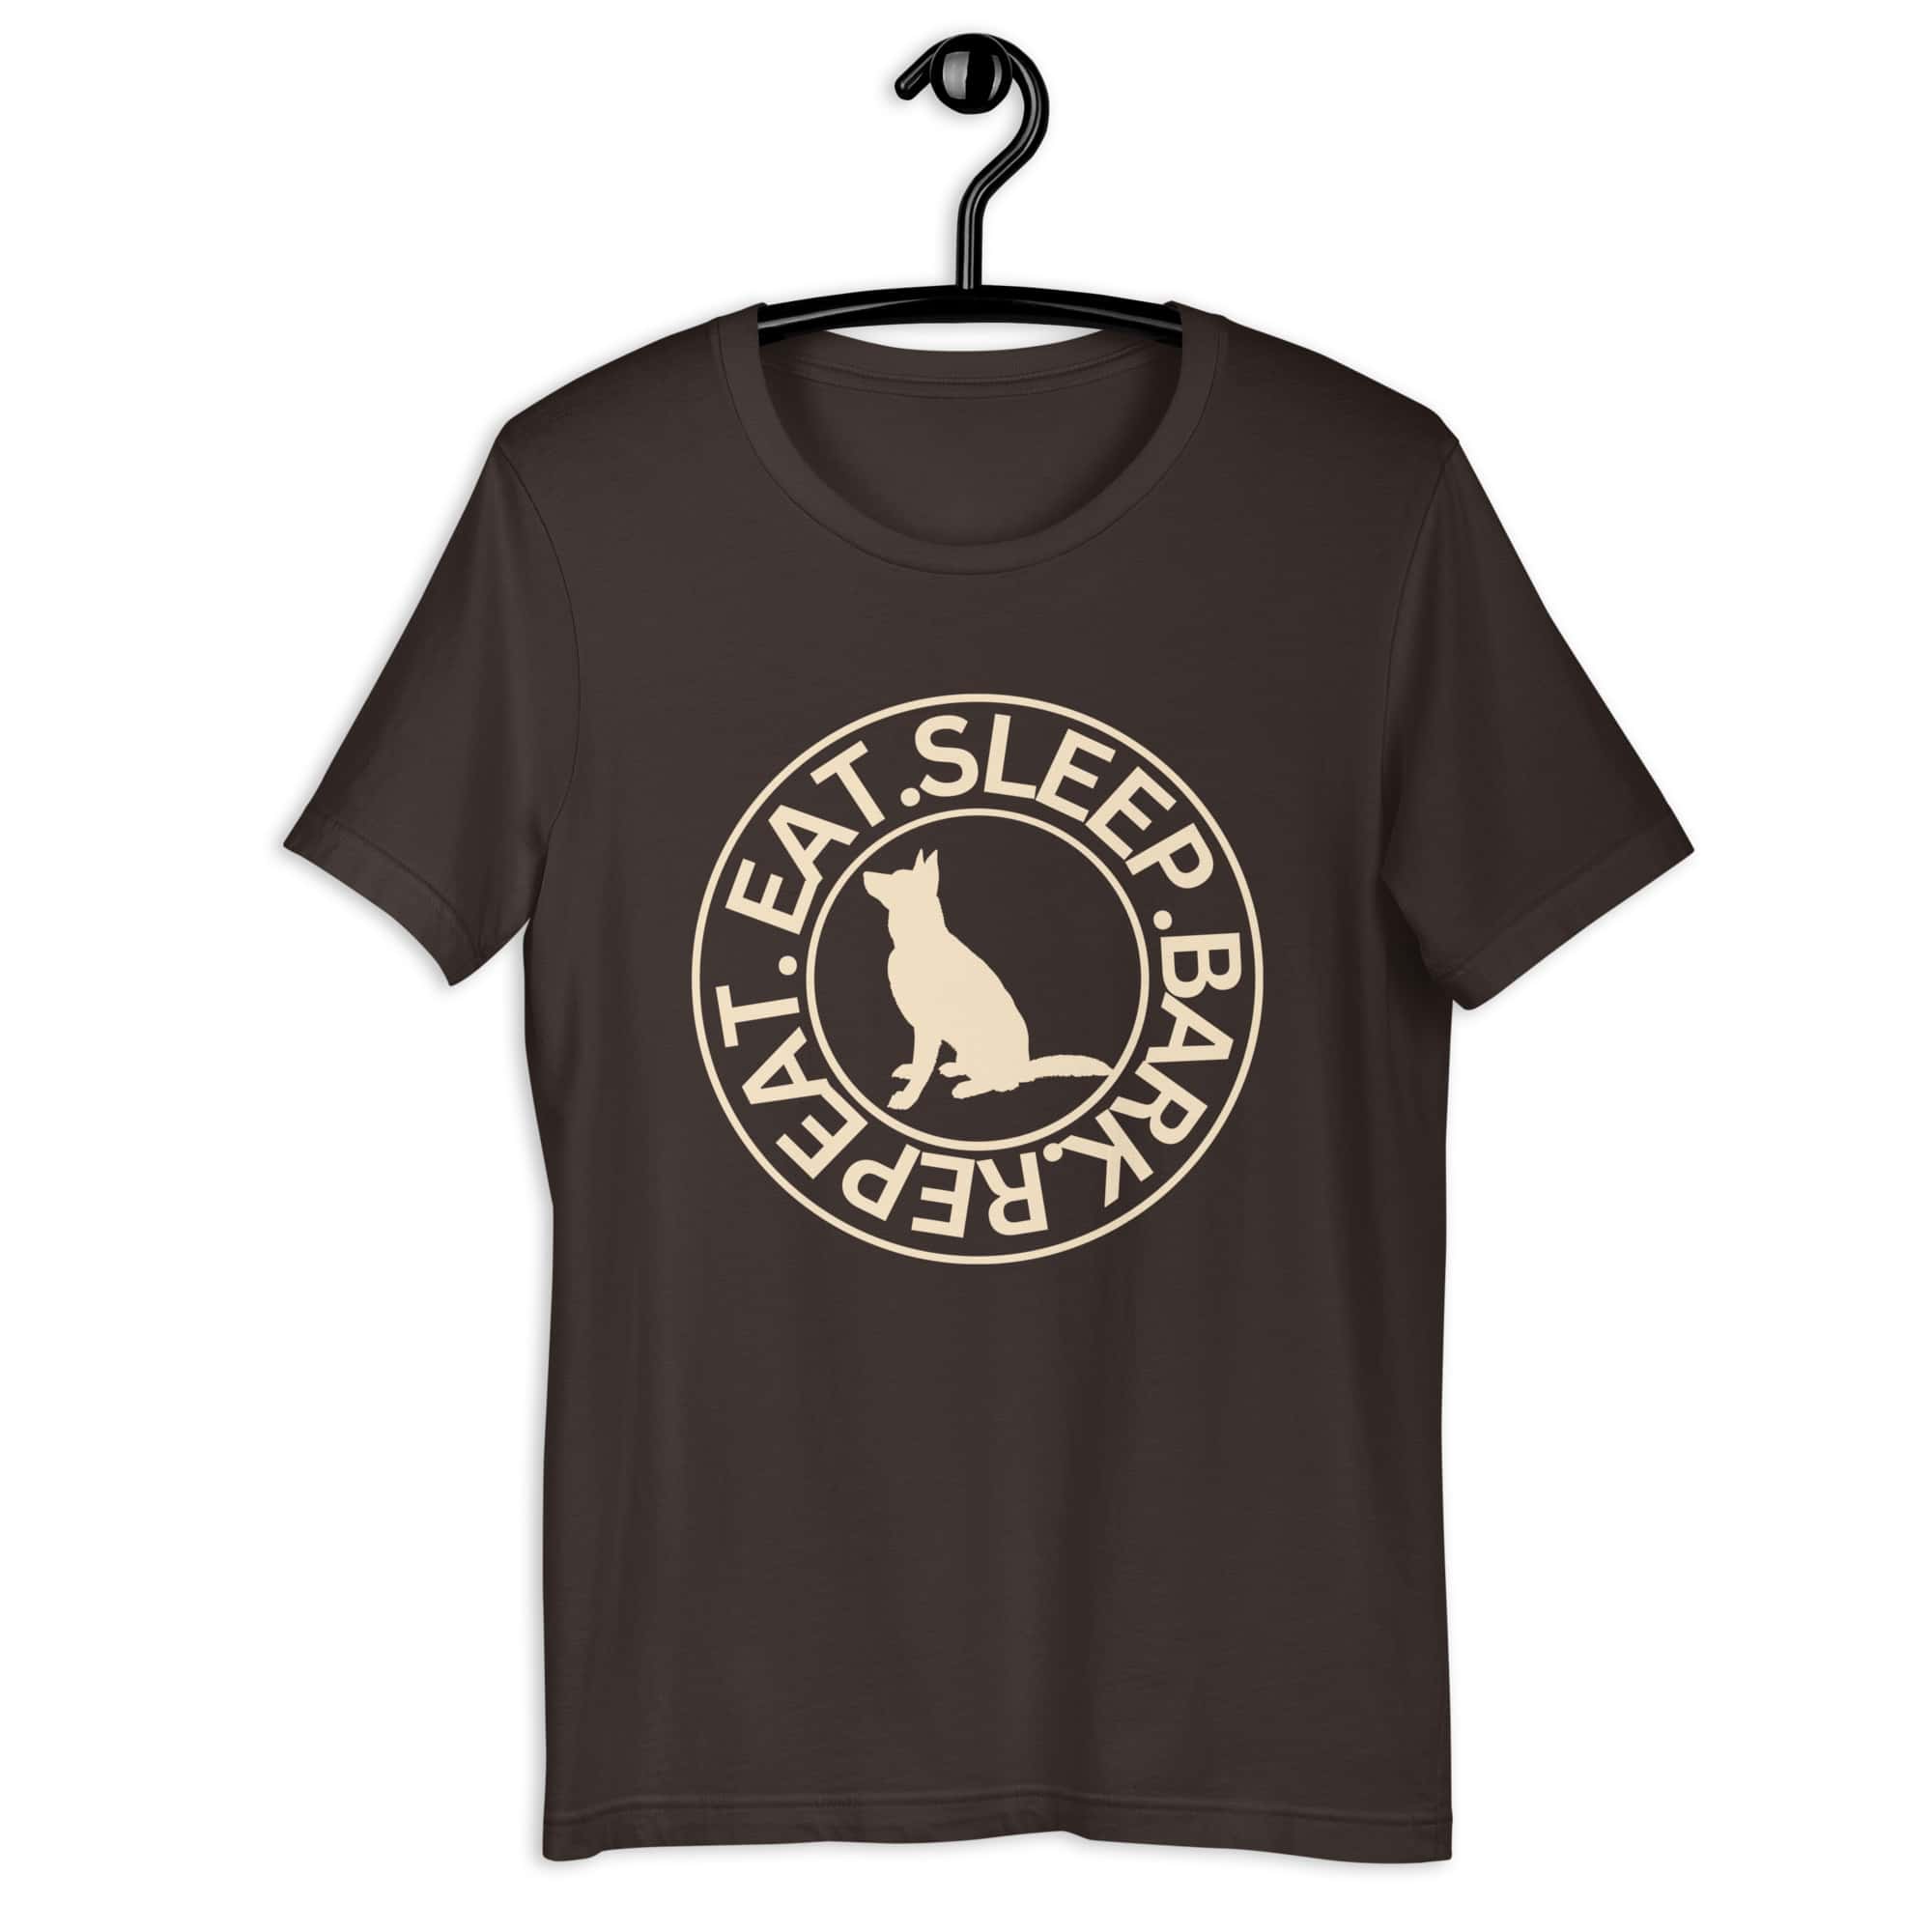 Eat Sleep Bark Repeat German Shepherd Unisex T-Shirt. Brown